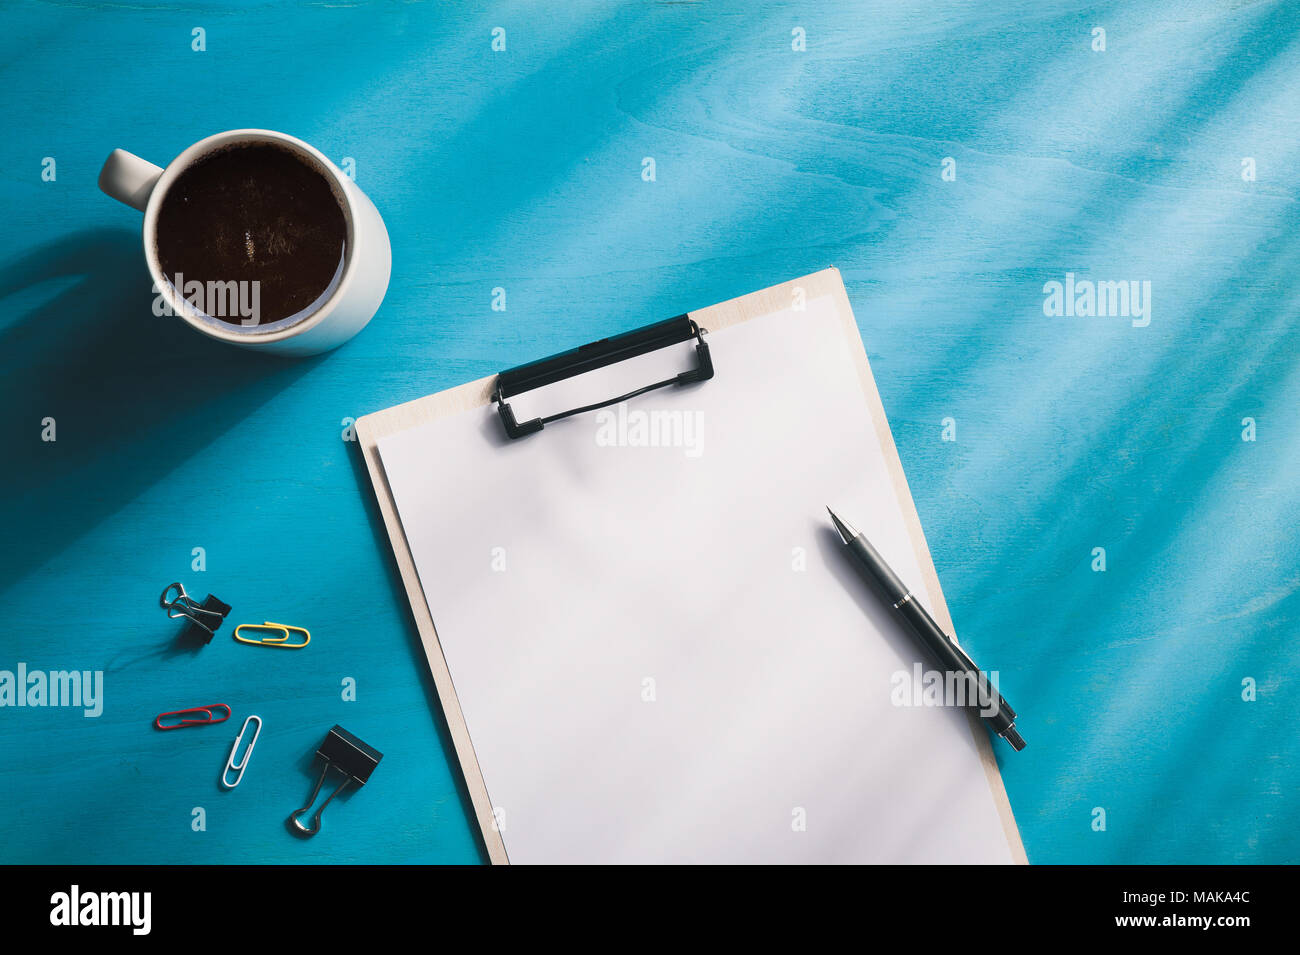 Dimensioni A4 negli appunti e una tazzina di caffè blu sulla tavola di legno con illuminazione naturale effetto nella mattina tempo. sfondo con la zona vuota per il testo o messaggio. Foto Stock